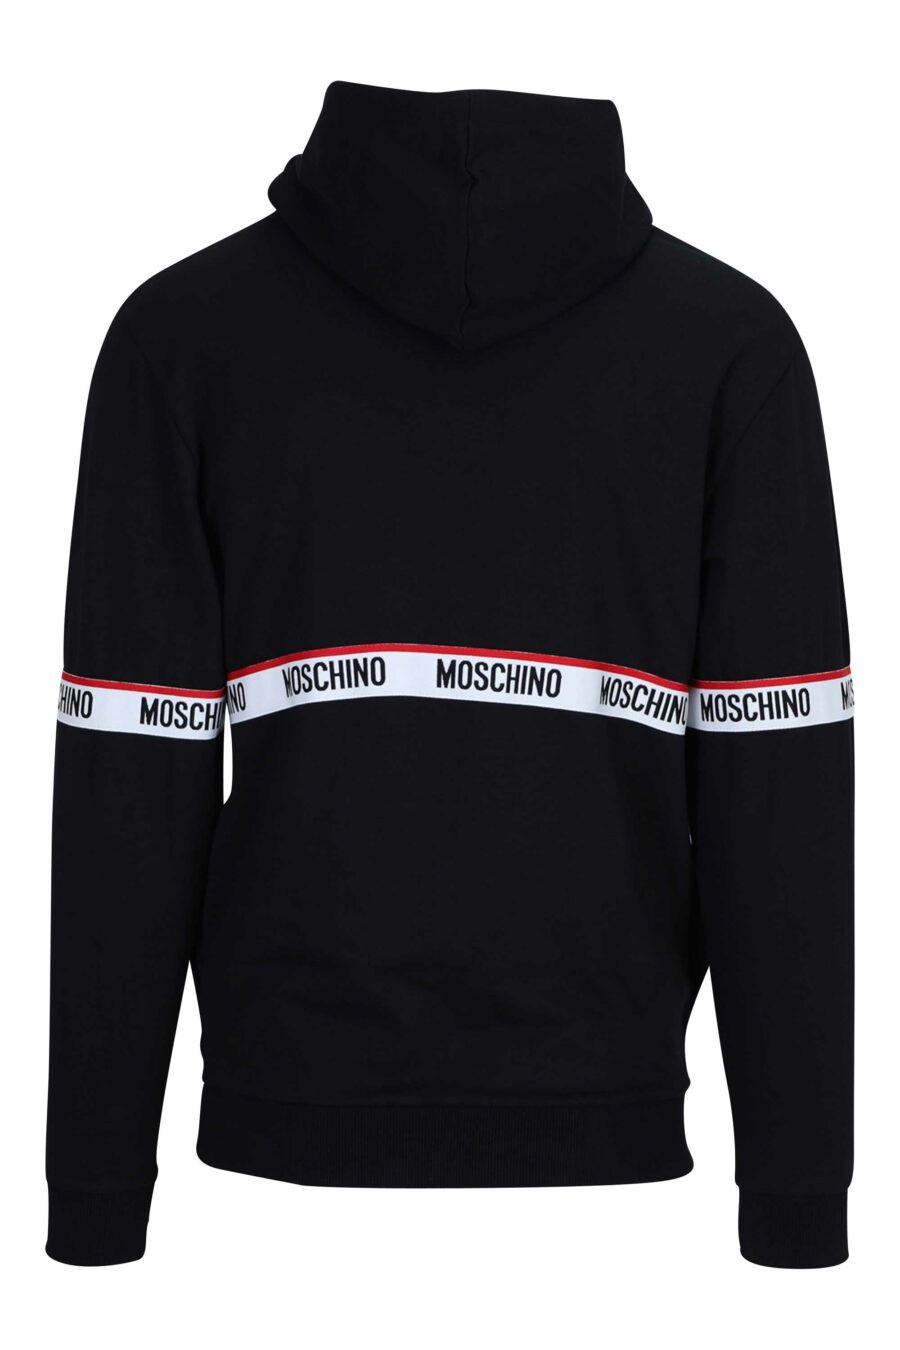 Schwarzes Sweatshirt mit Kapuze und Logo auf zentralem Band - 667113012506 1